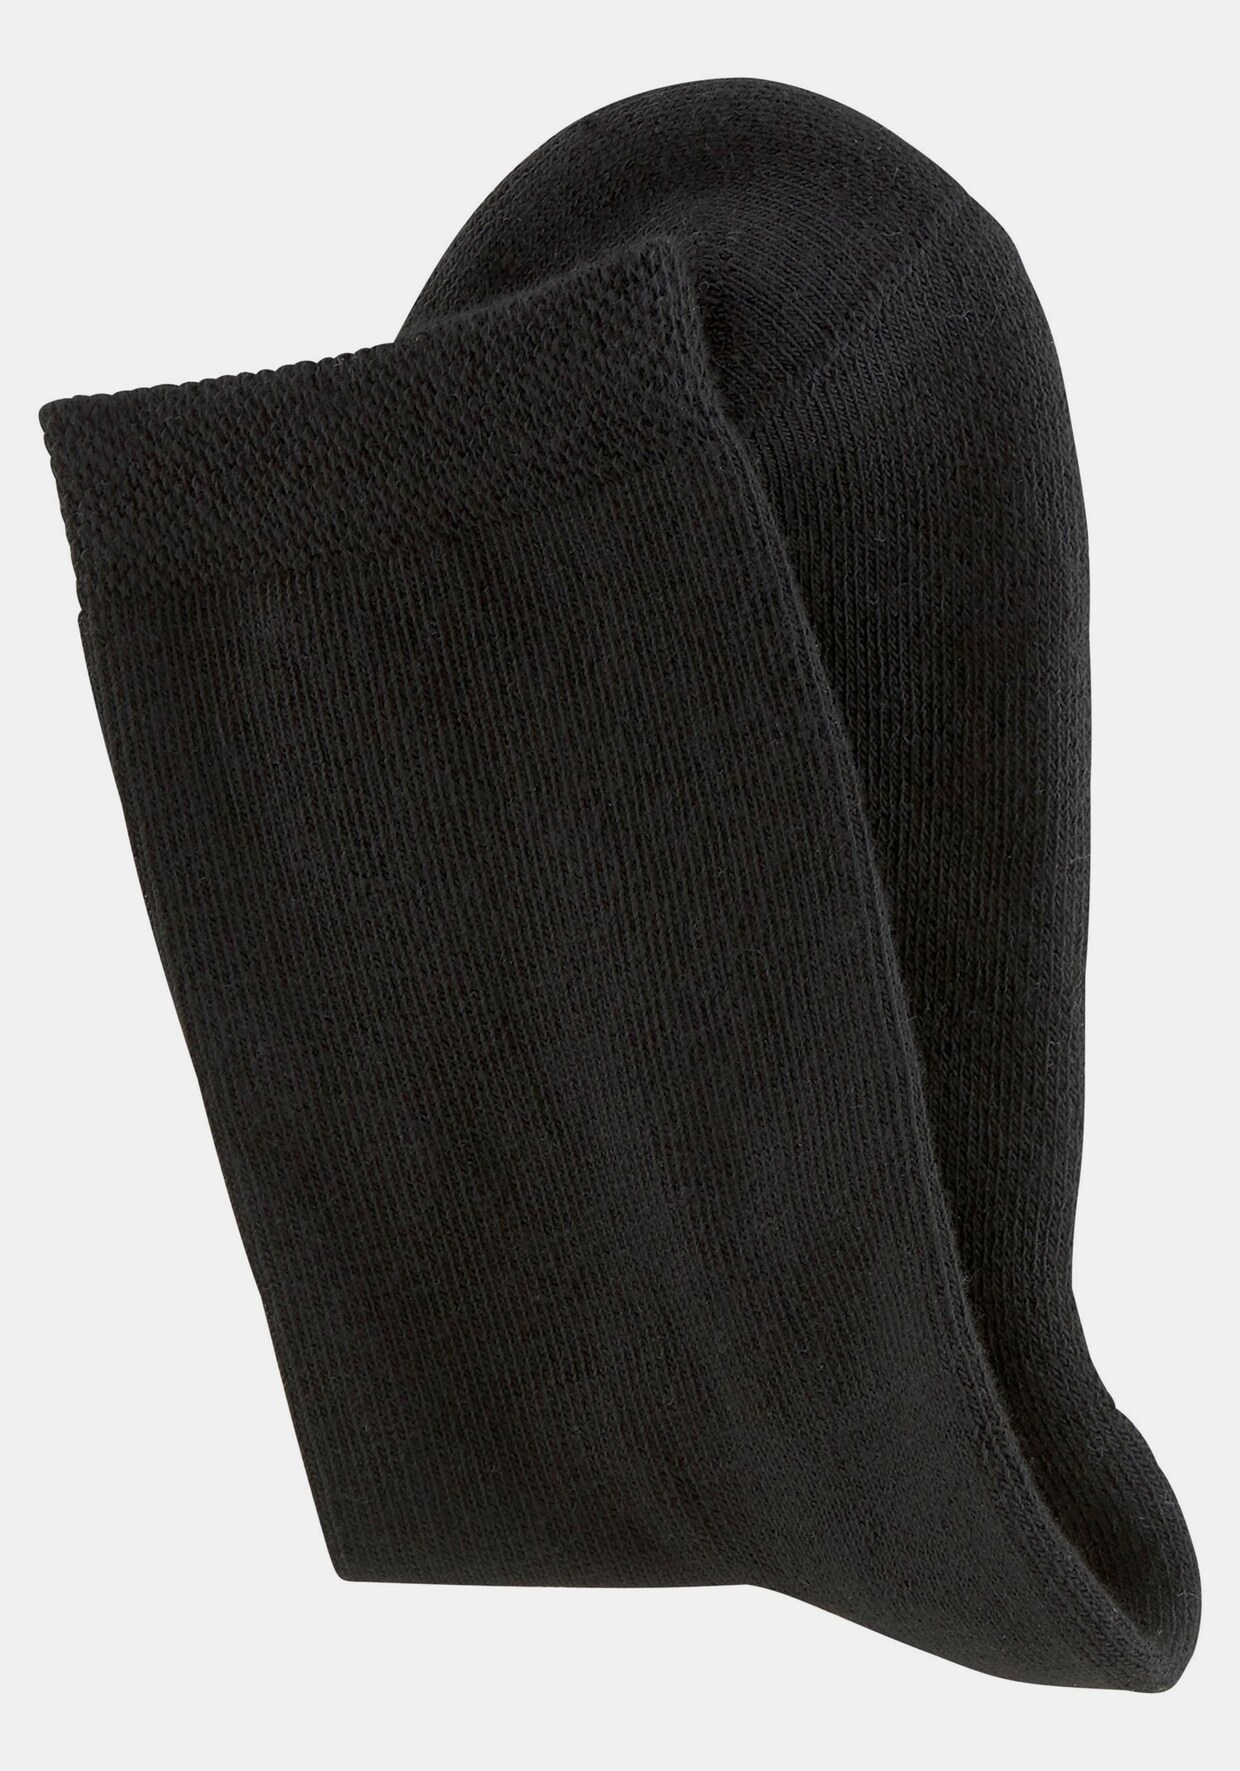 H.I.S Socken - 6x schwarz